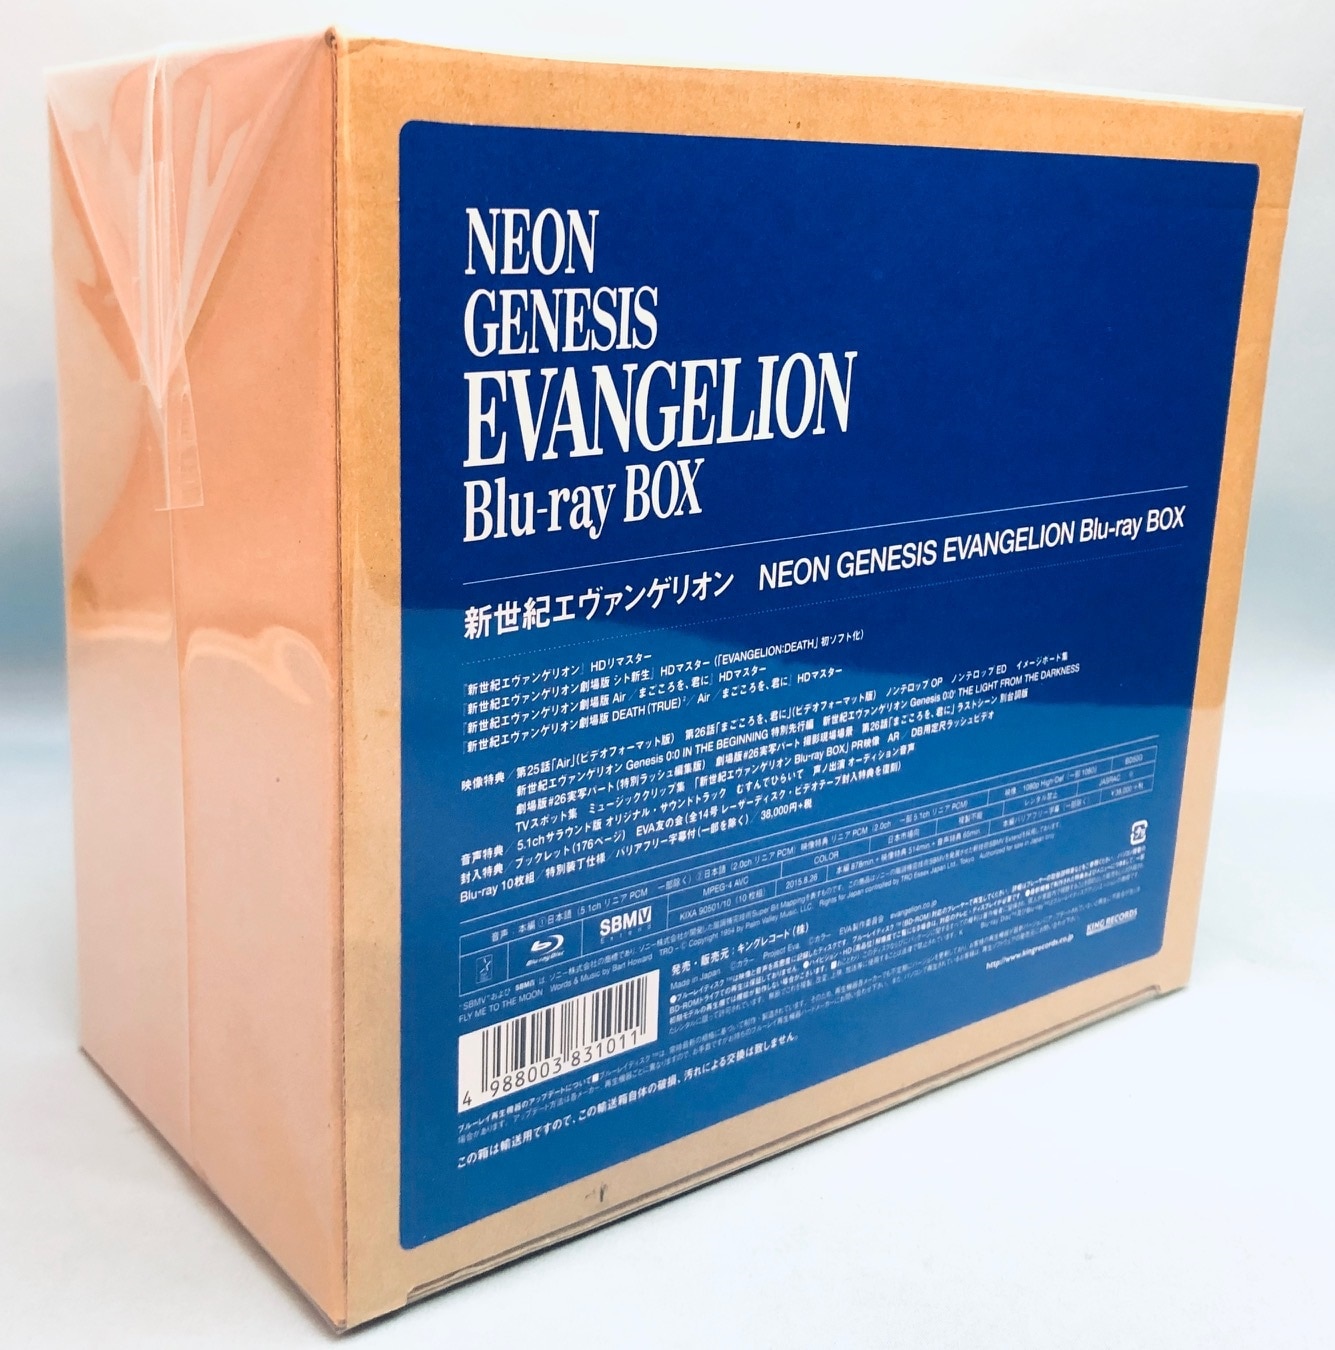 新世紀エヴァンゲリオン Blu-ray BOX NEON GENESIS EVANGELION Blu-ray